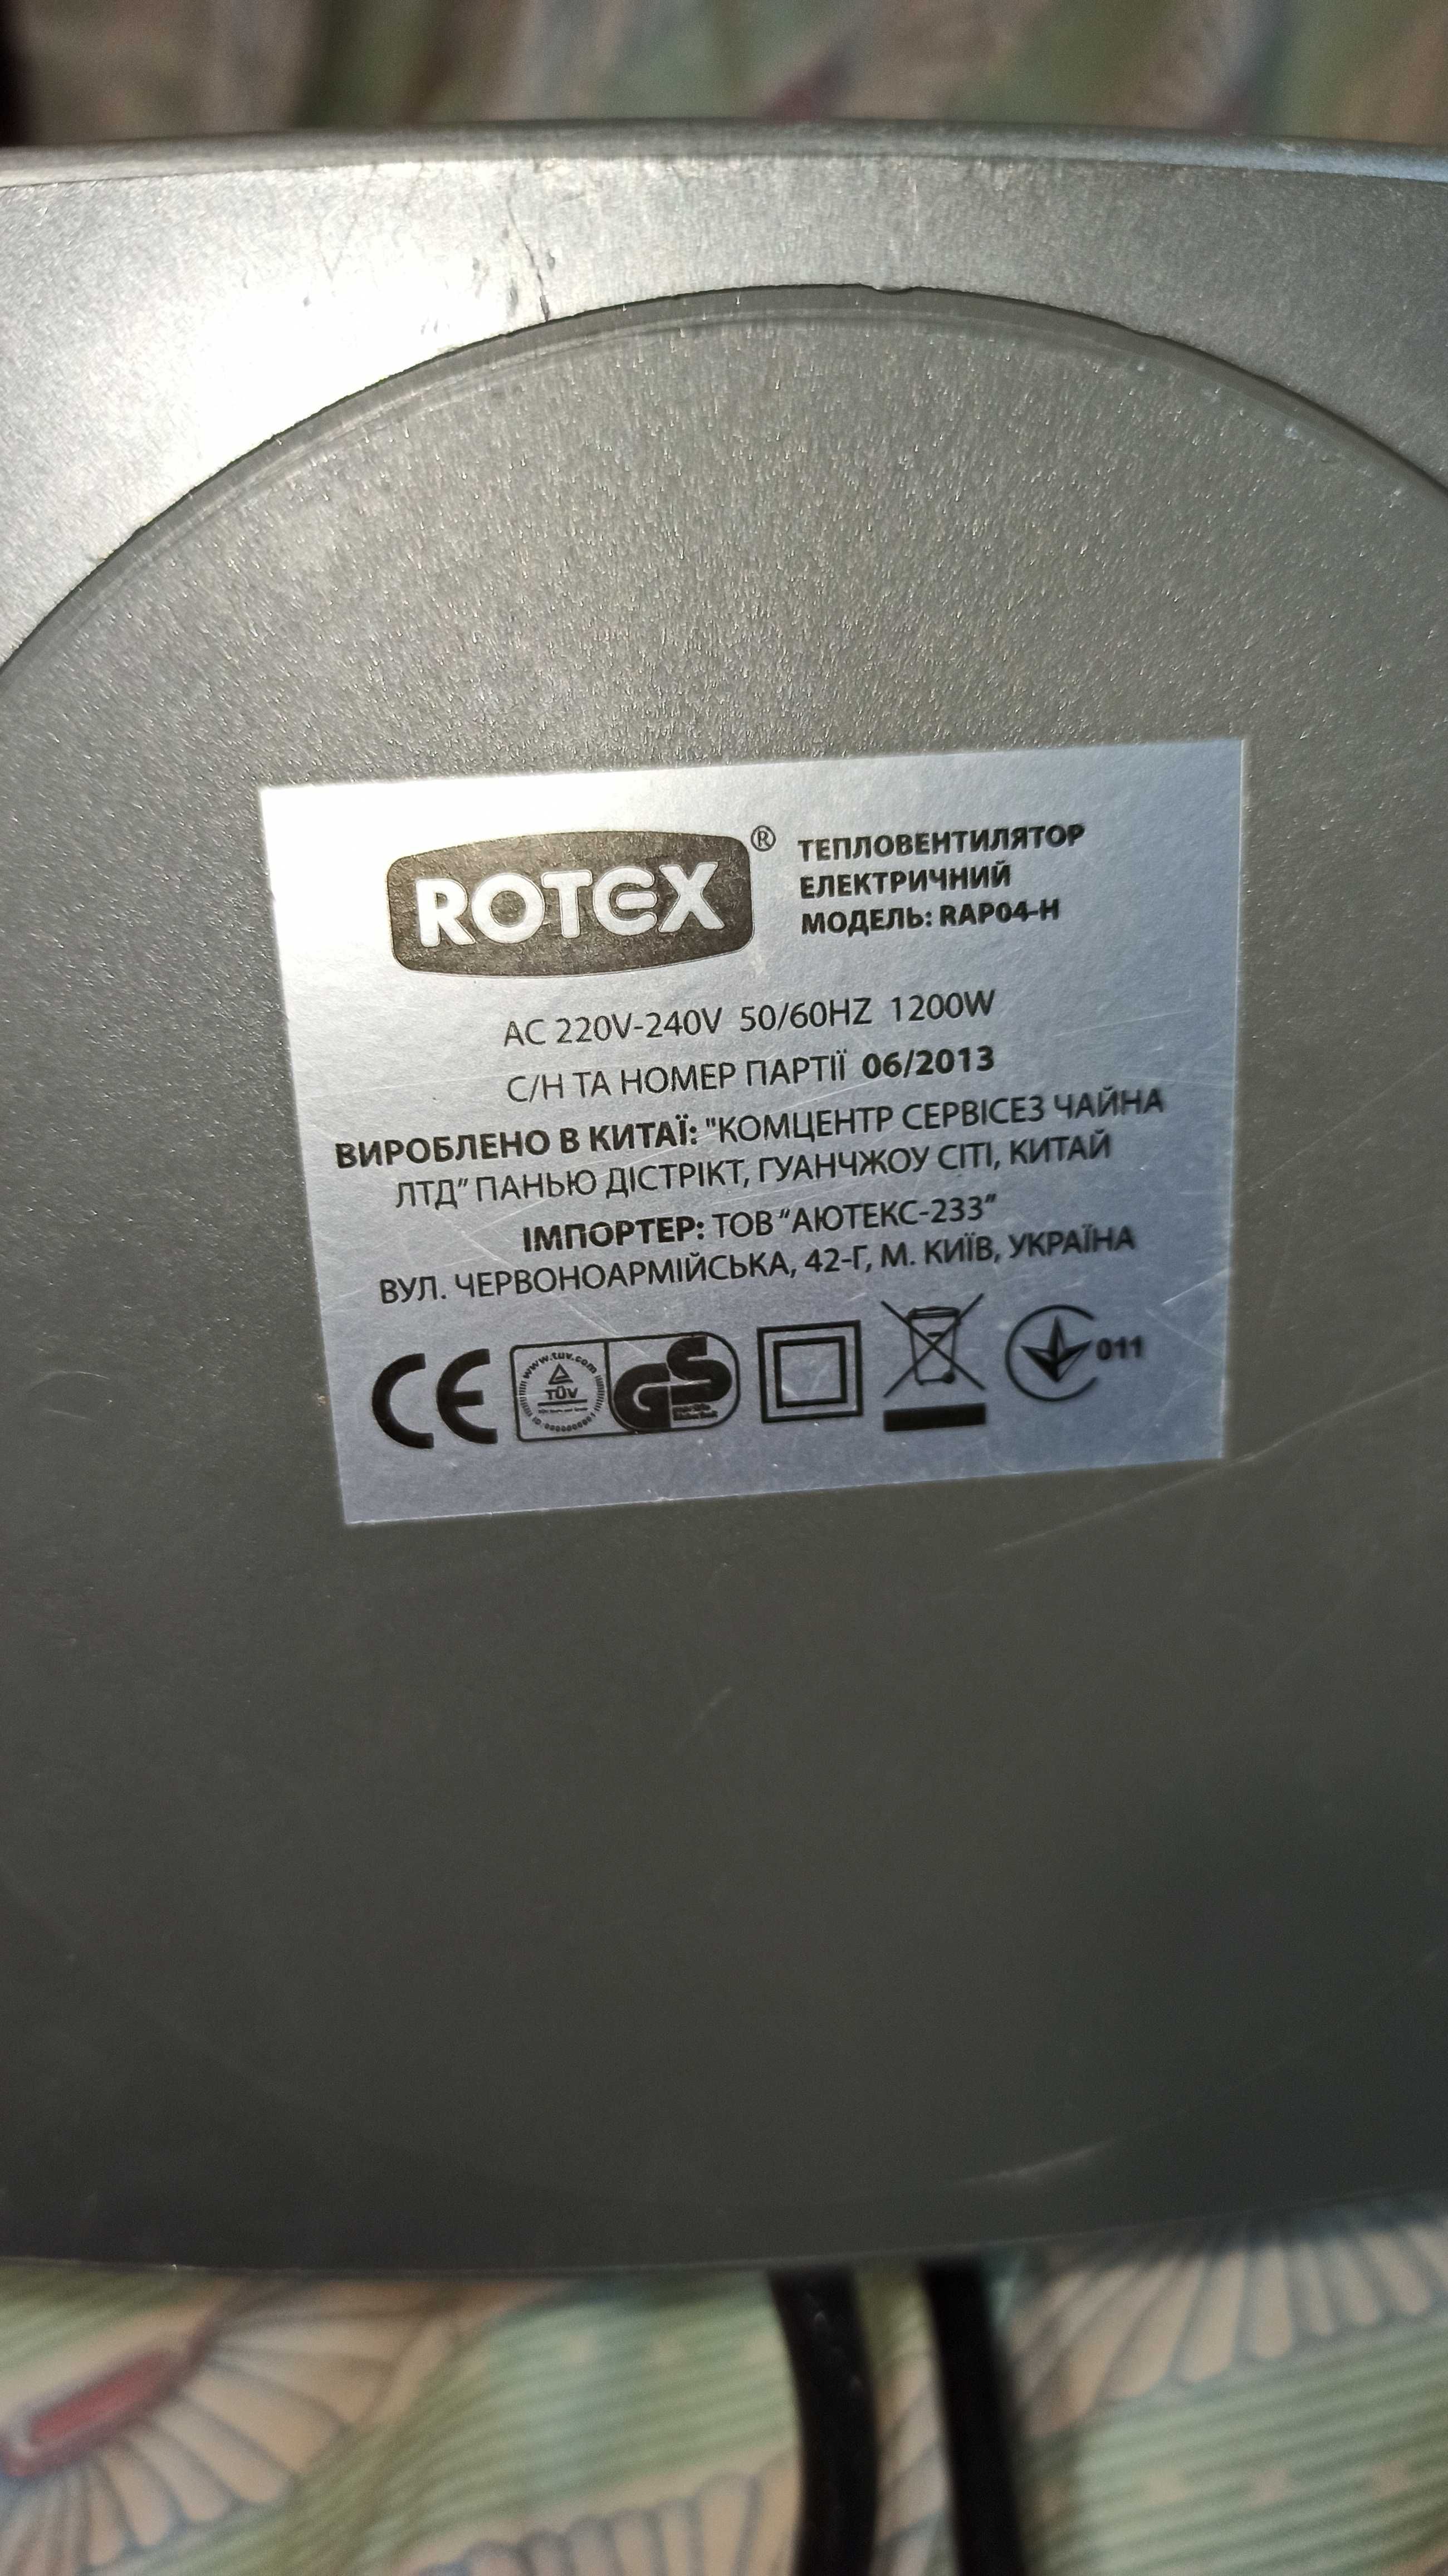 Тепловентилятор ROTEX RAP04-H